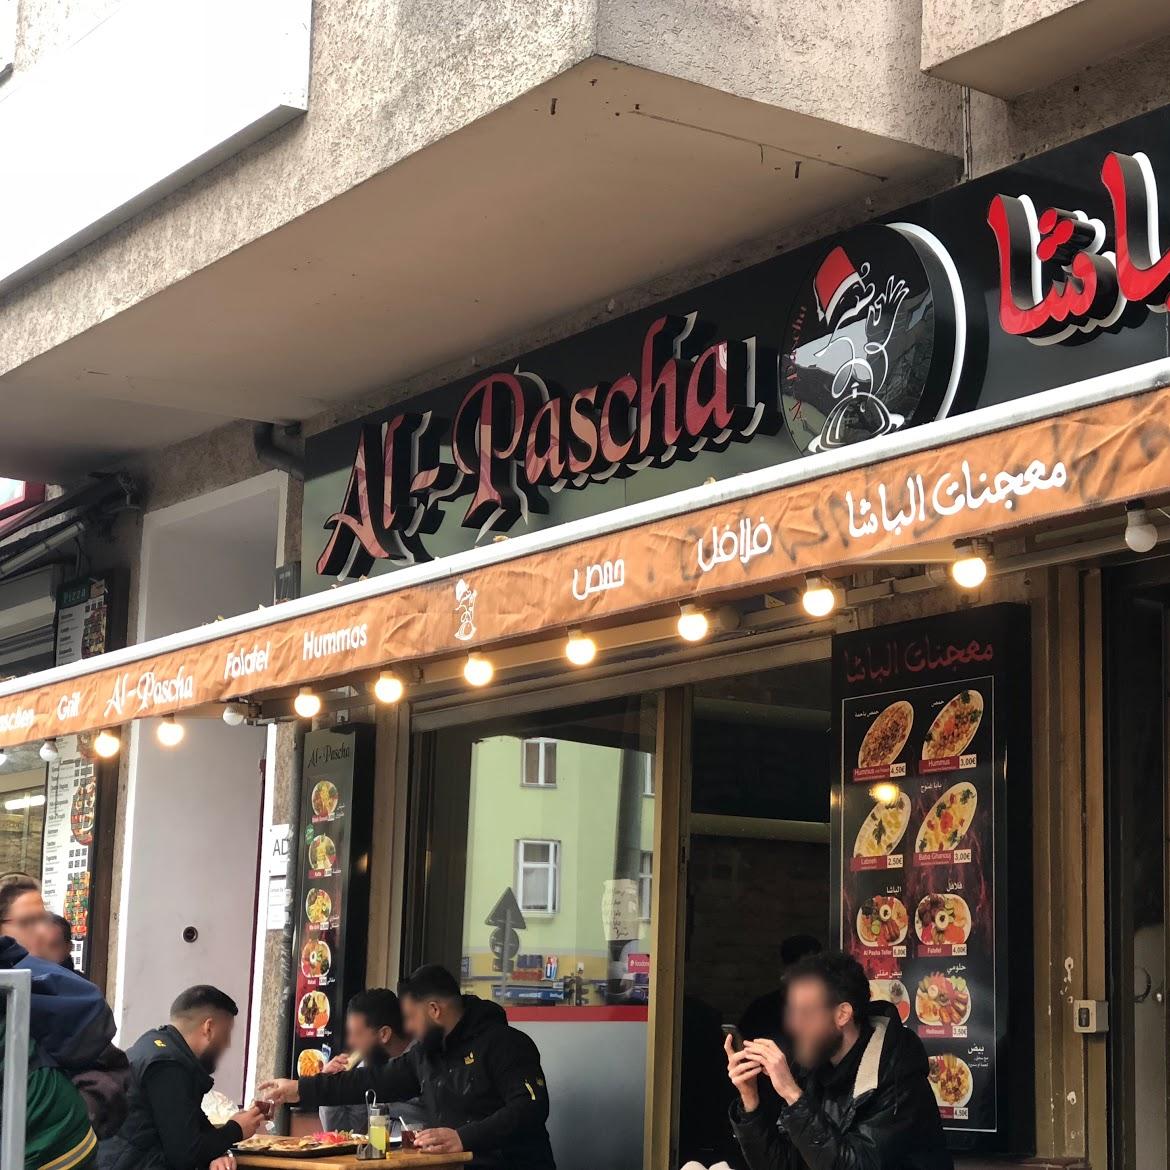 Restaurant "Al Pasha Restaurant" in Berlin